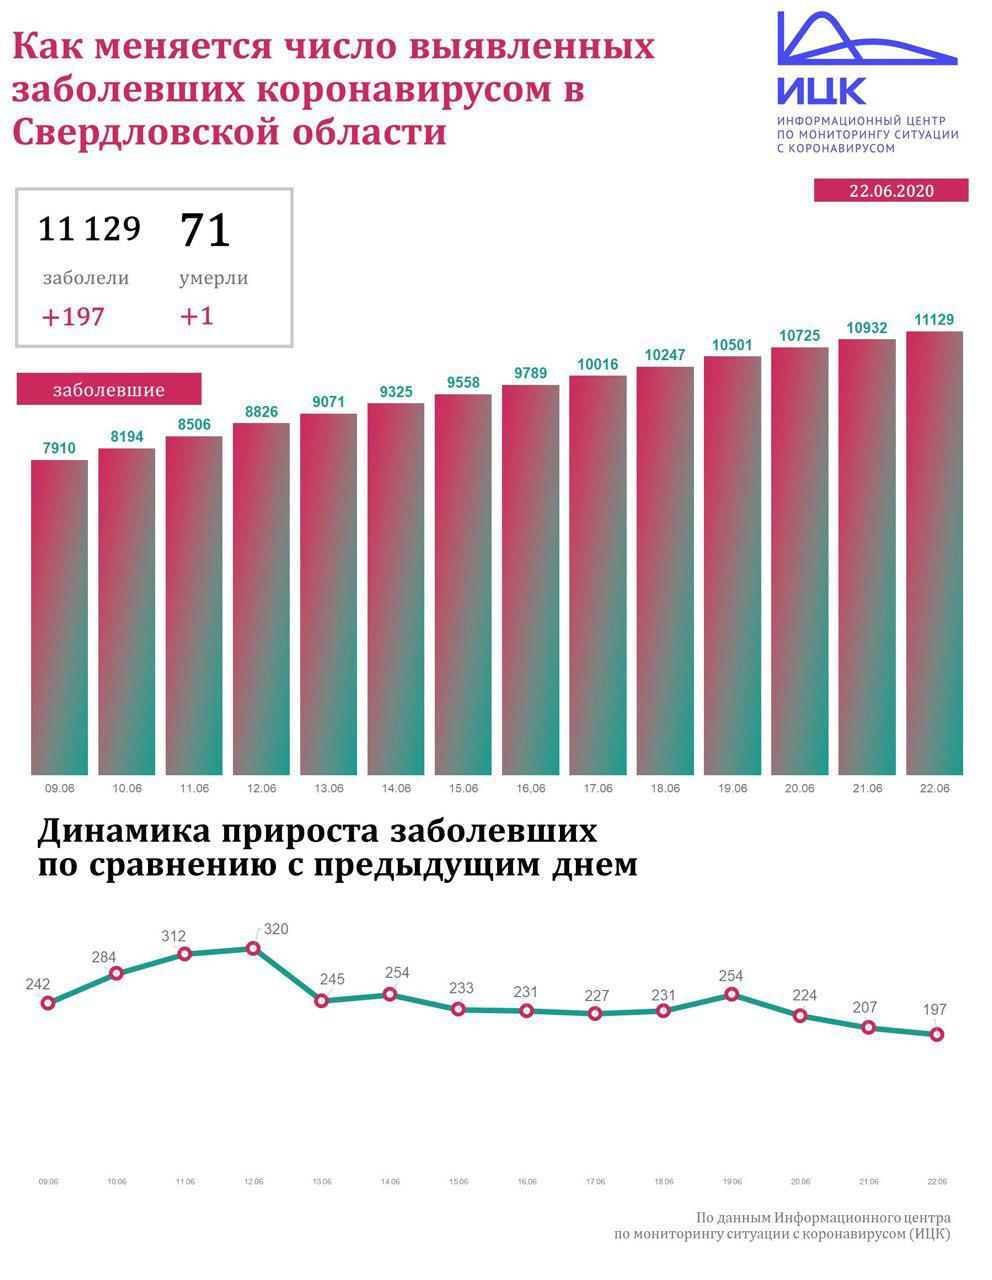 Новый День: В Свердловской области заболеваемость коронавирусом за сутки упала ниже 200